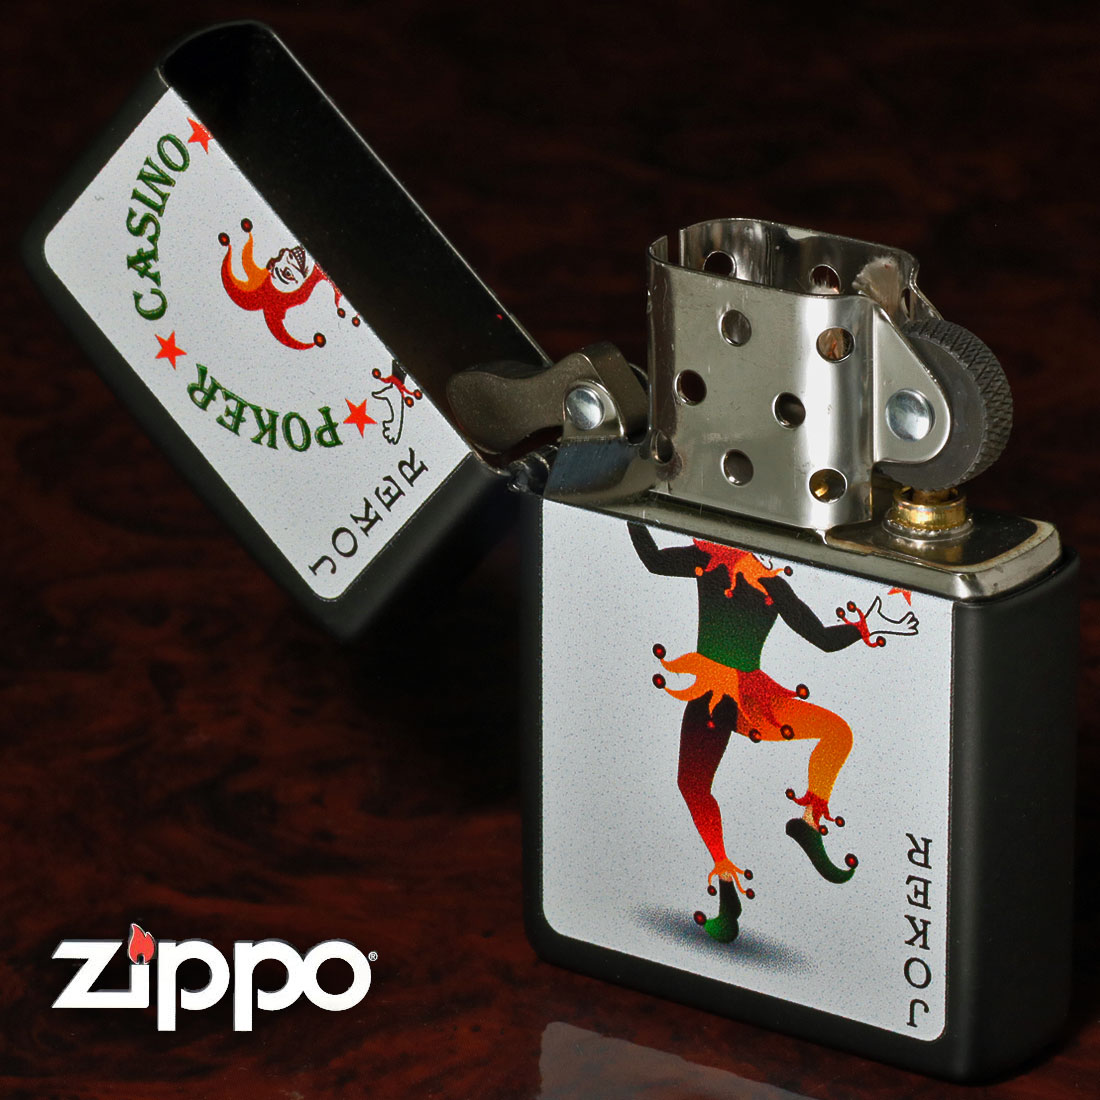 zippo(ジッポー) Joker Card ブラックマット ジョーカー 2023モデル Z218-104617 トランプ　CASINO メンズ  おしゃれ ギフト 送料無料 （ネコポス対応）